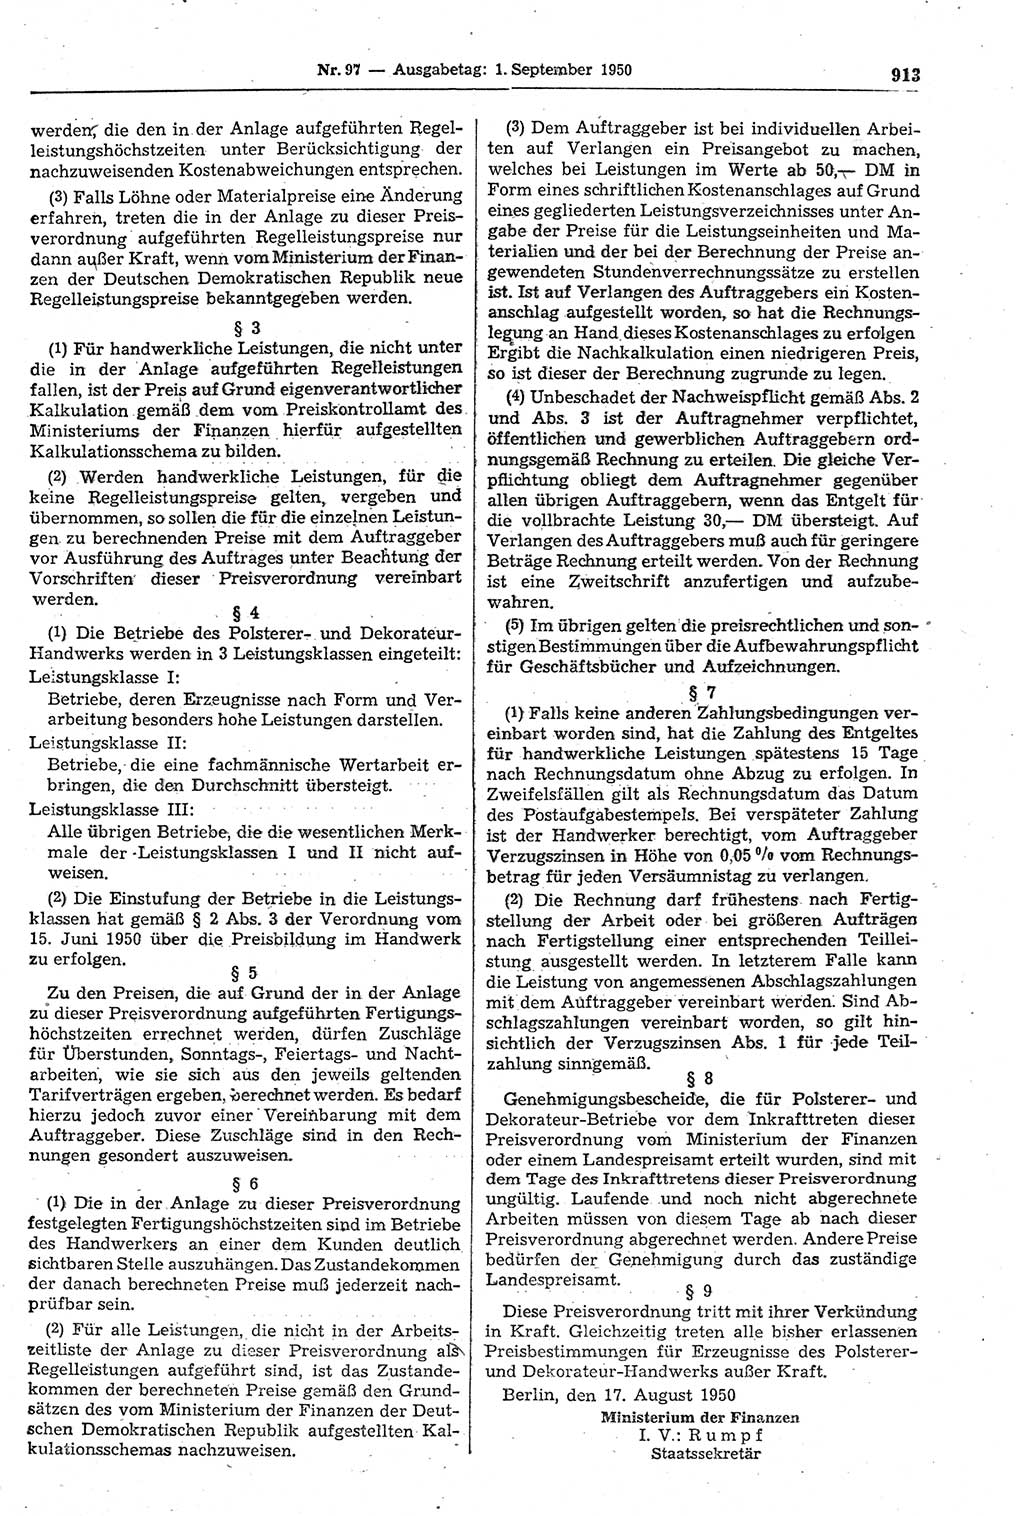 Gesetzblatt (GBl.) der Deutschen Demokratischen Republik (DDR) 1950, Seite 913 (GBl. DDR 1950, S. 913)